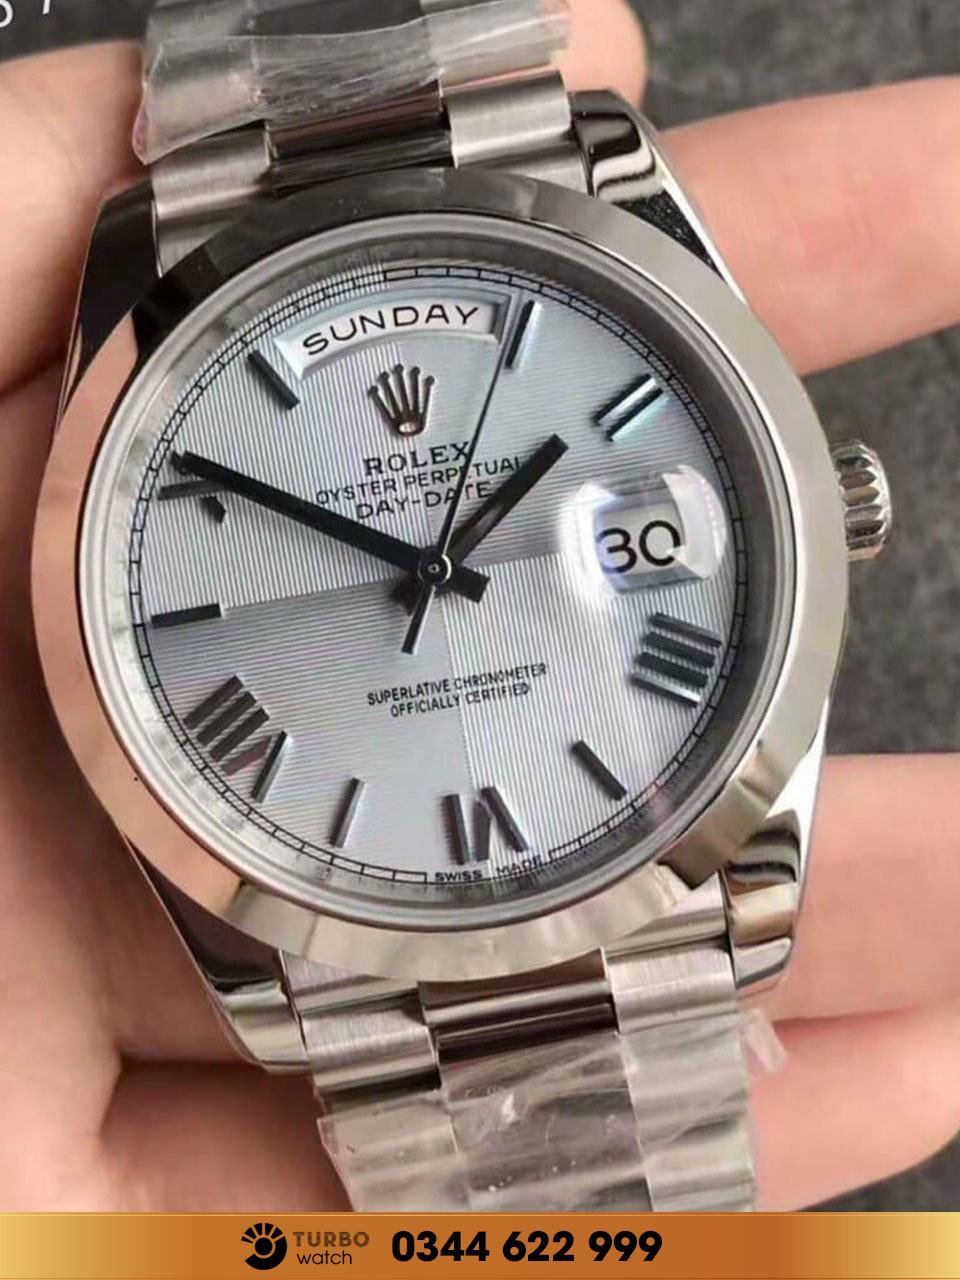 Làm thế nào để chọn mua đồng hồ Rolex super fake tốt nhất